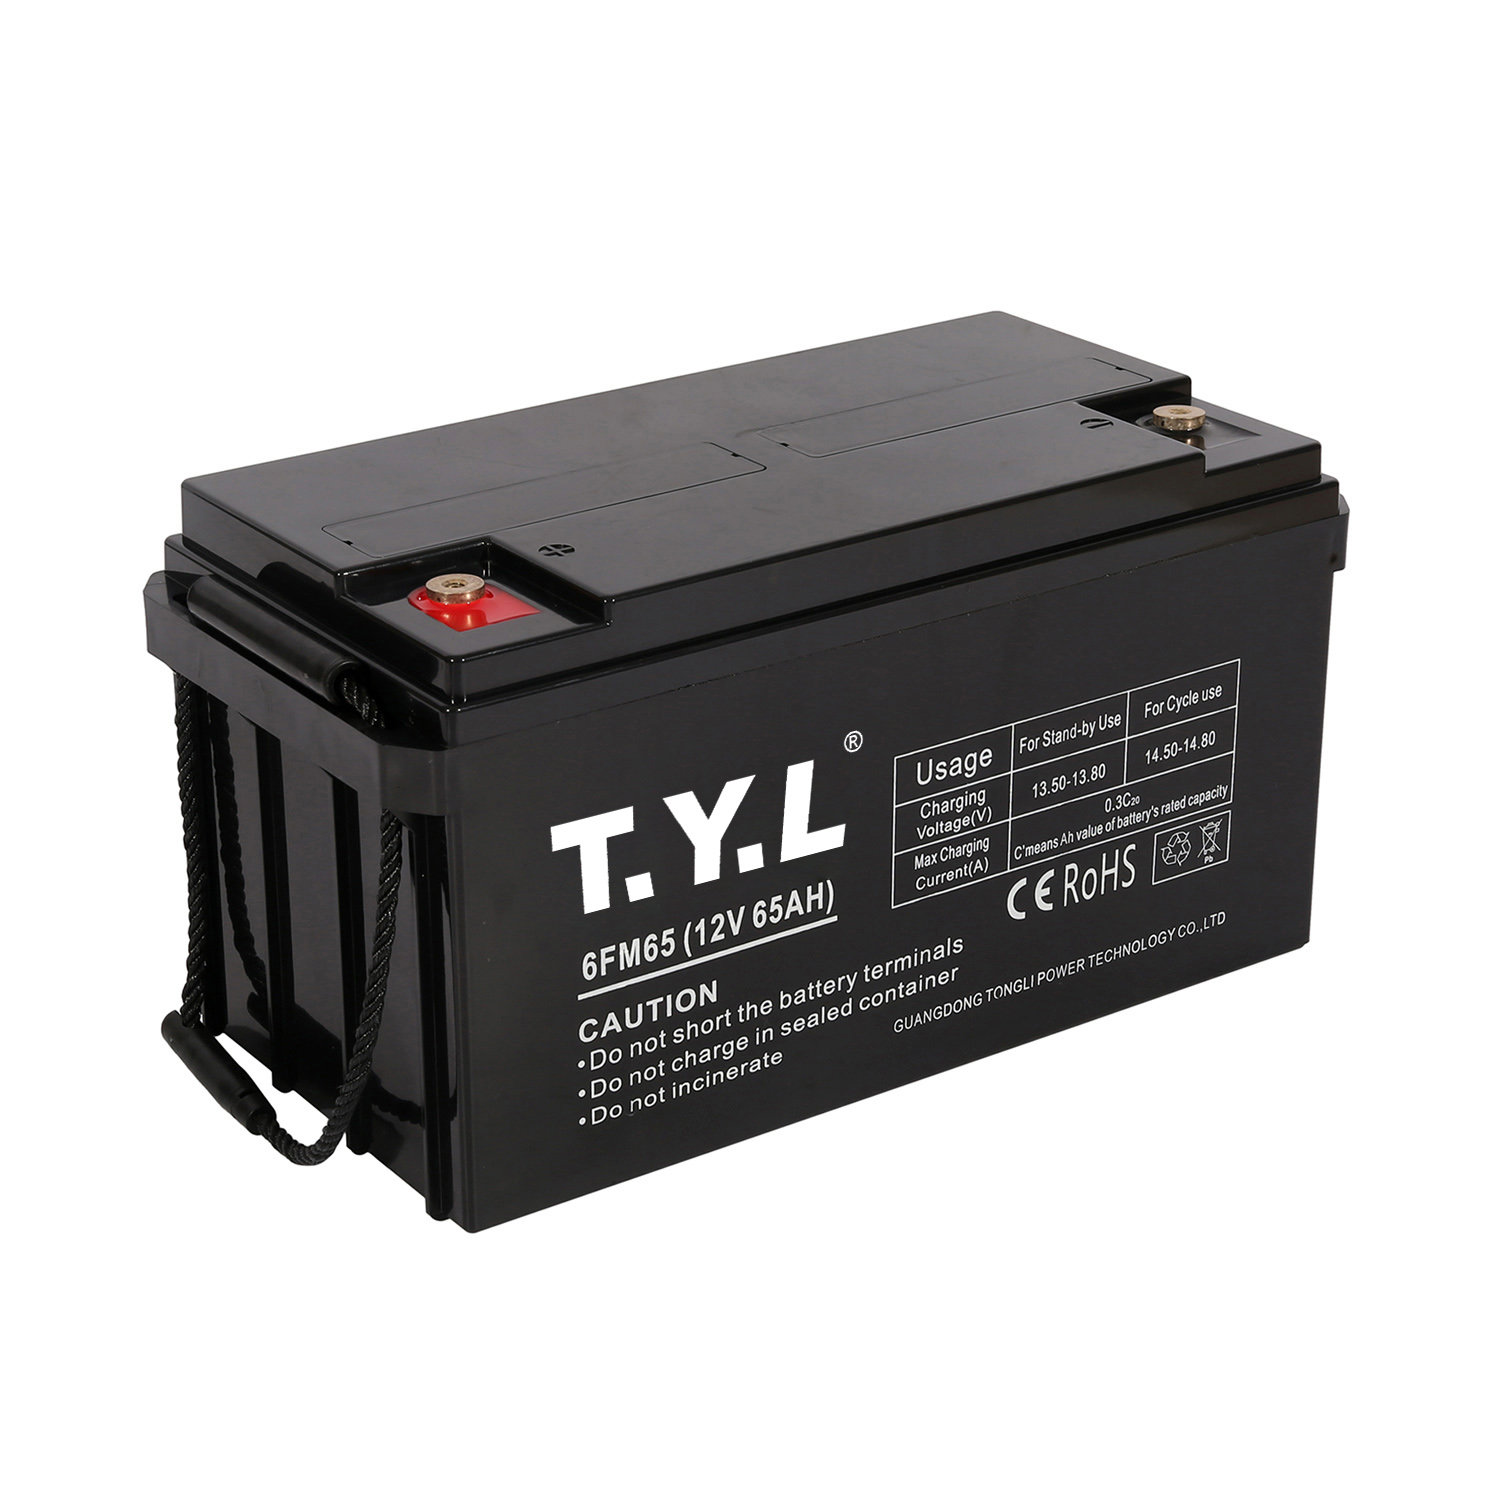 Batterie de stockage haute tension rectangulaire 12V65AH pour la maison